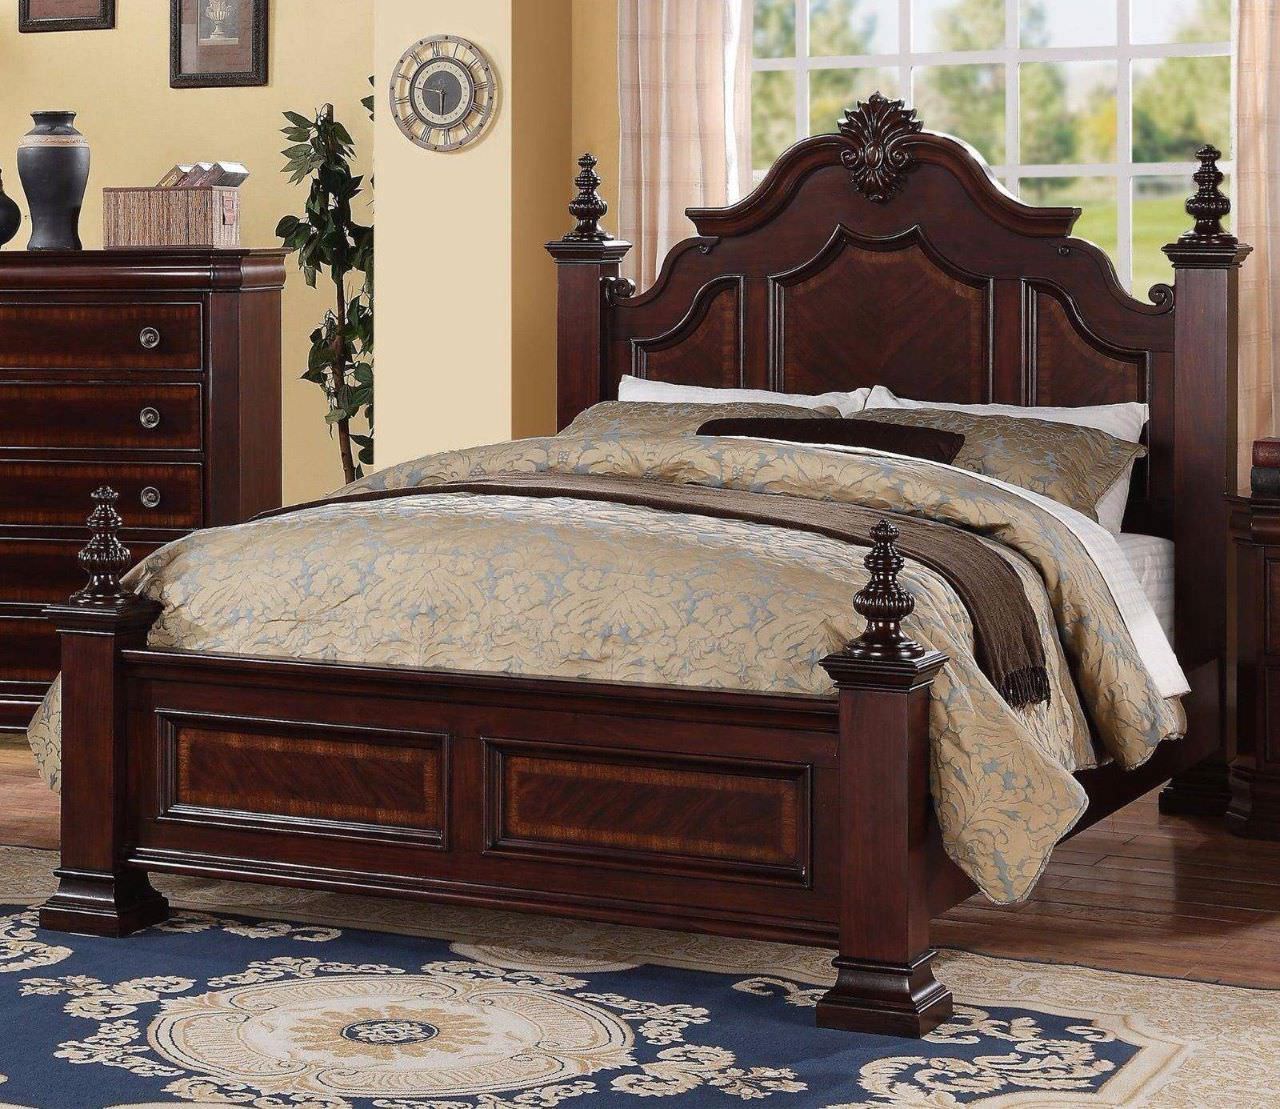 Mẫu giường ngủ mang phong cách vintage với chất liệu gỗ tự nhiên bền đẹp